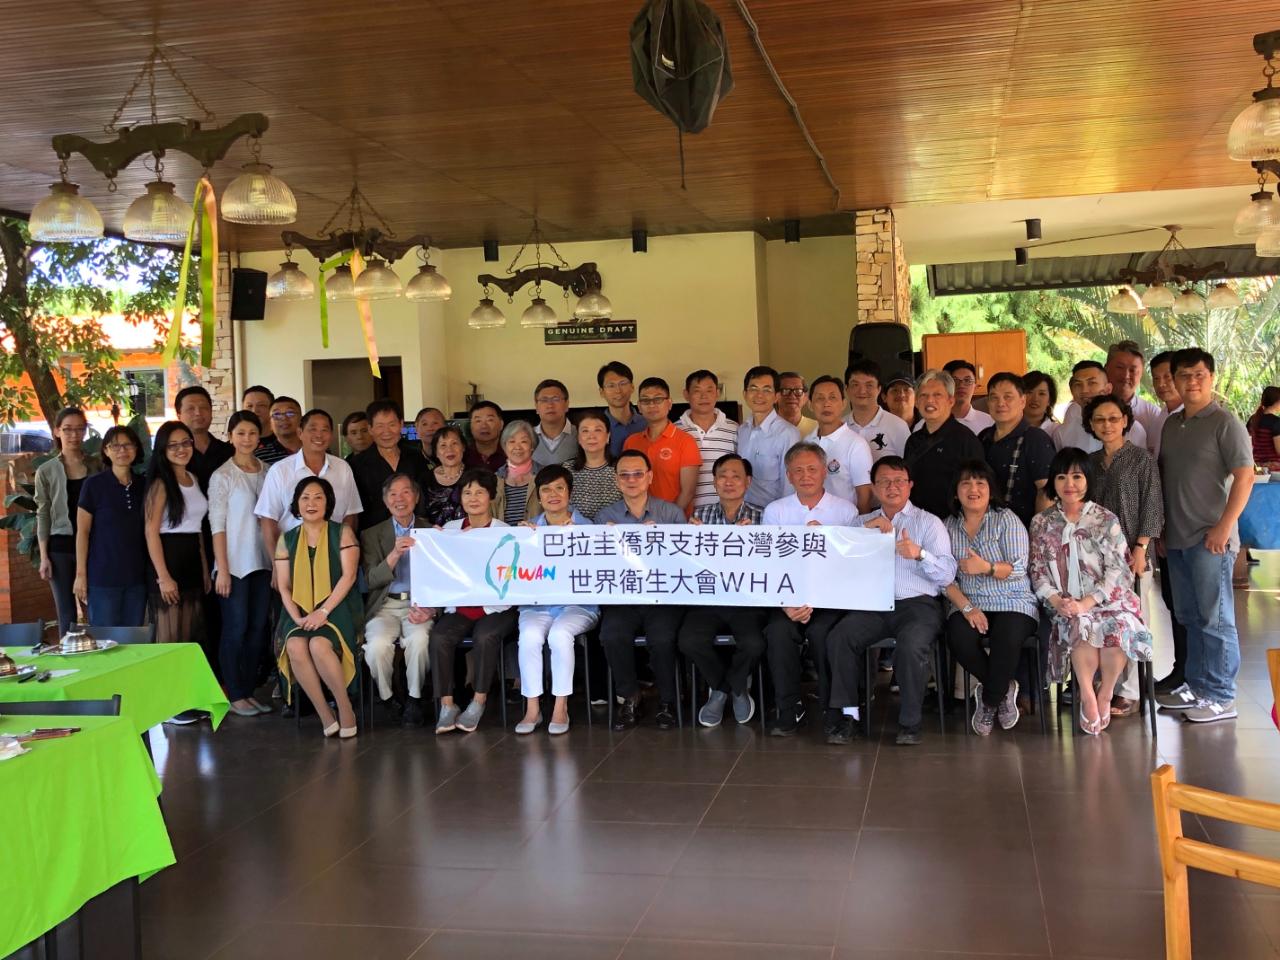 巴拉圭僑界串聯支持台灣參與WHA